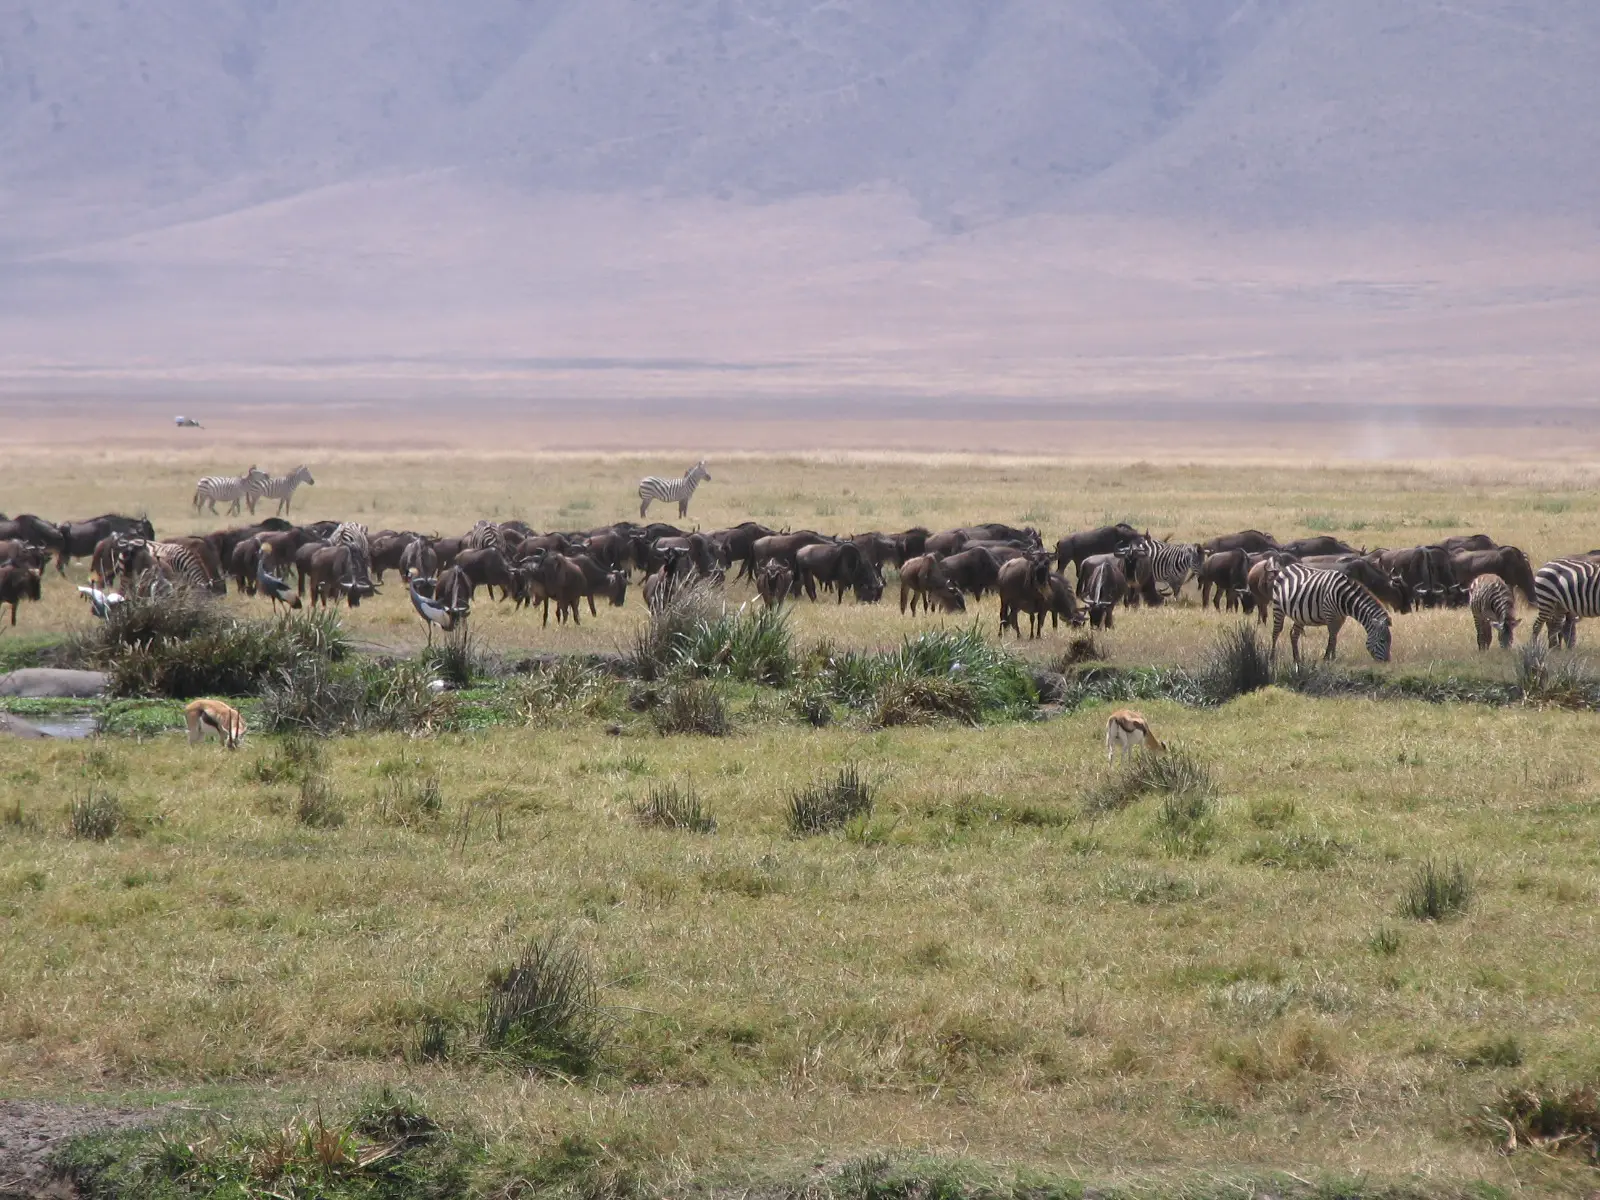 La migration des gnous et des zèbres dans le parc national du Serengeti en Tanzanie